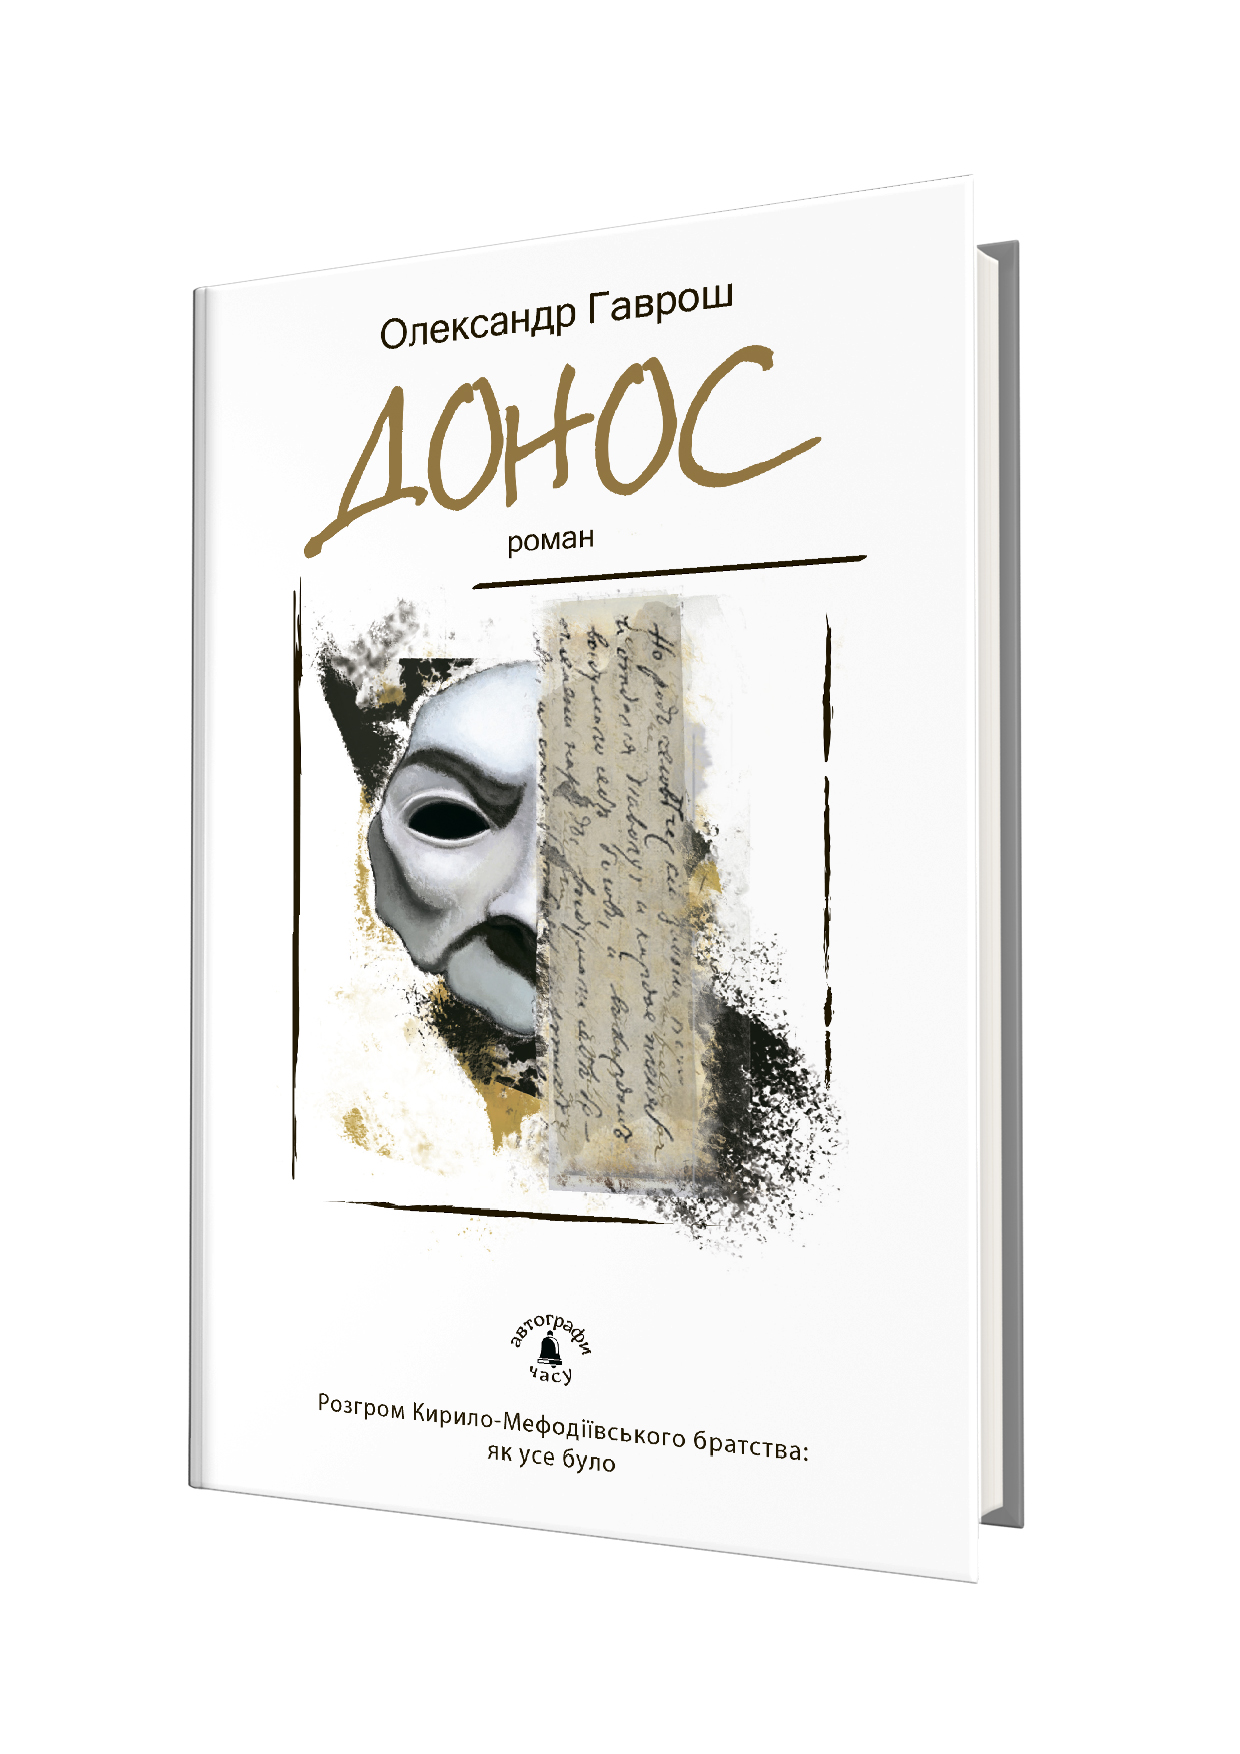 Нова книжка Олександра Гавроша “Донос”, яка щойно побачила світ у київському видавництві “Академія”, фактично відкрила новий літературний рік на Закарпатті. 